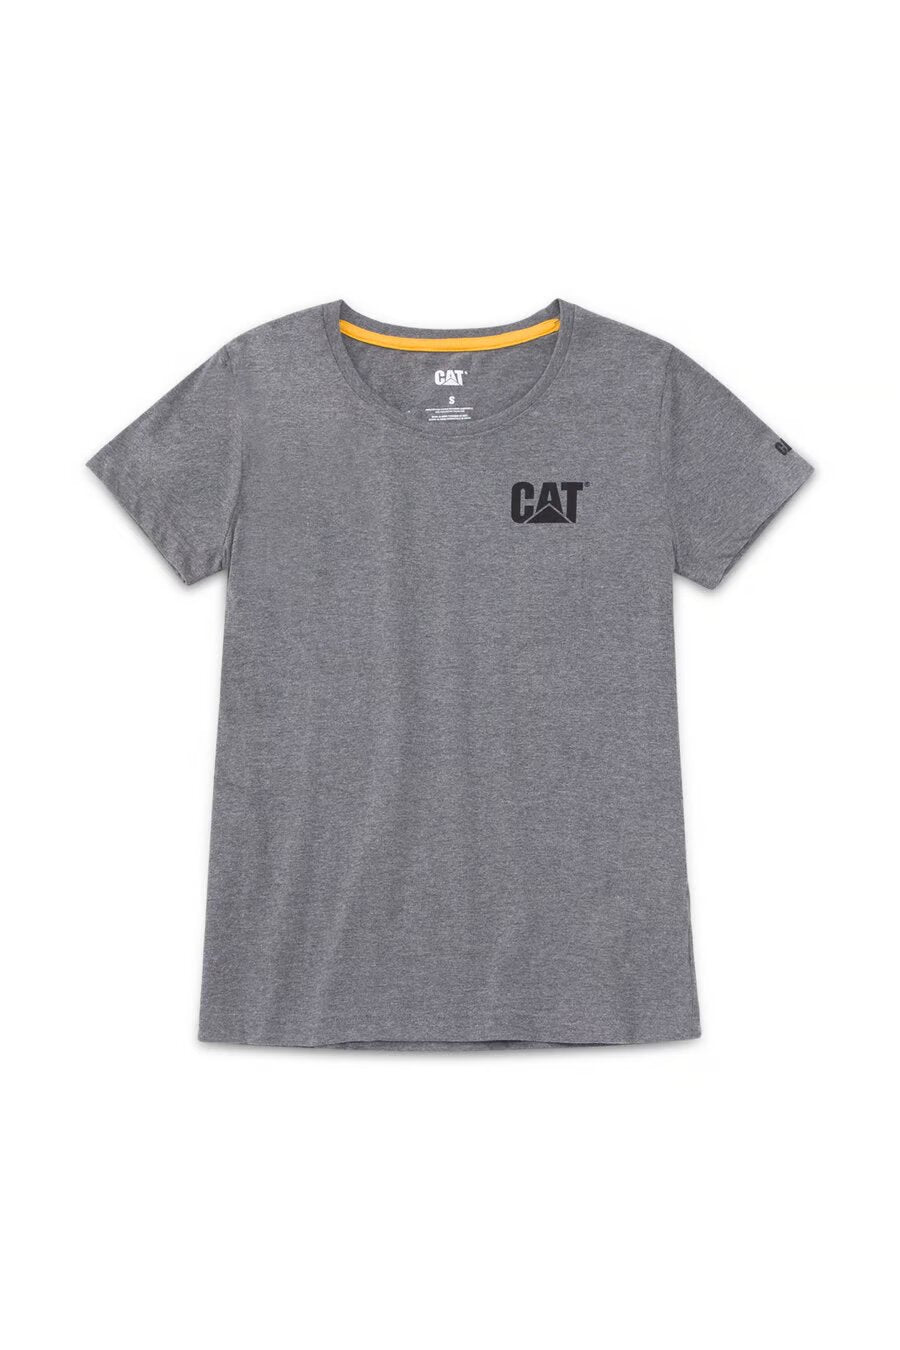 CAT Women's Trademark Tees